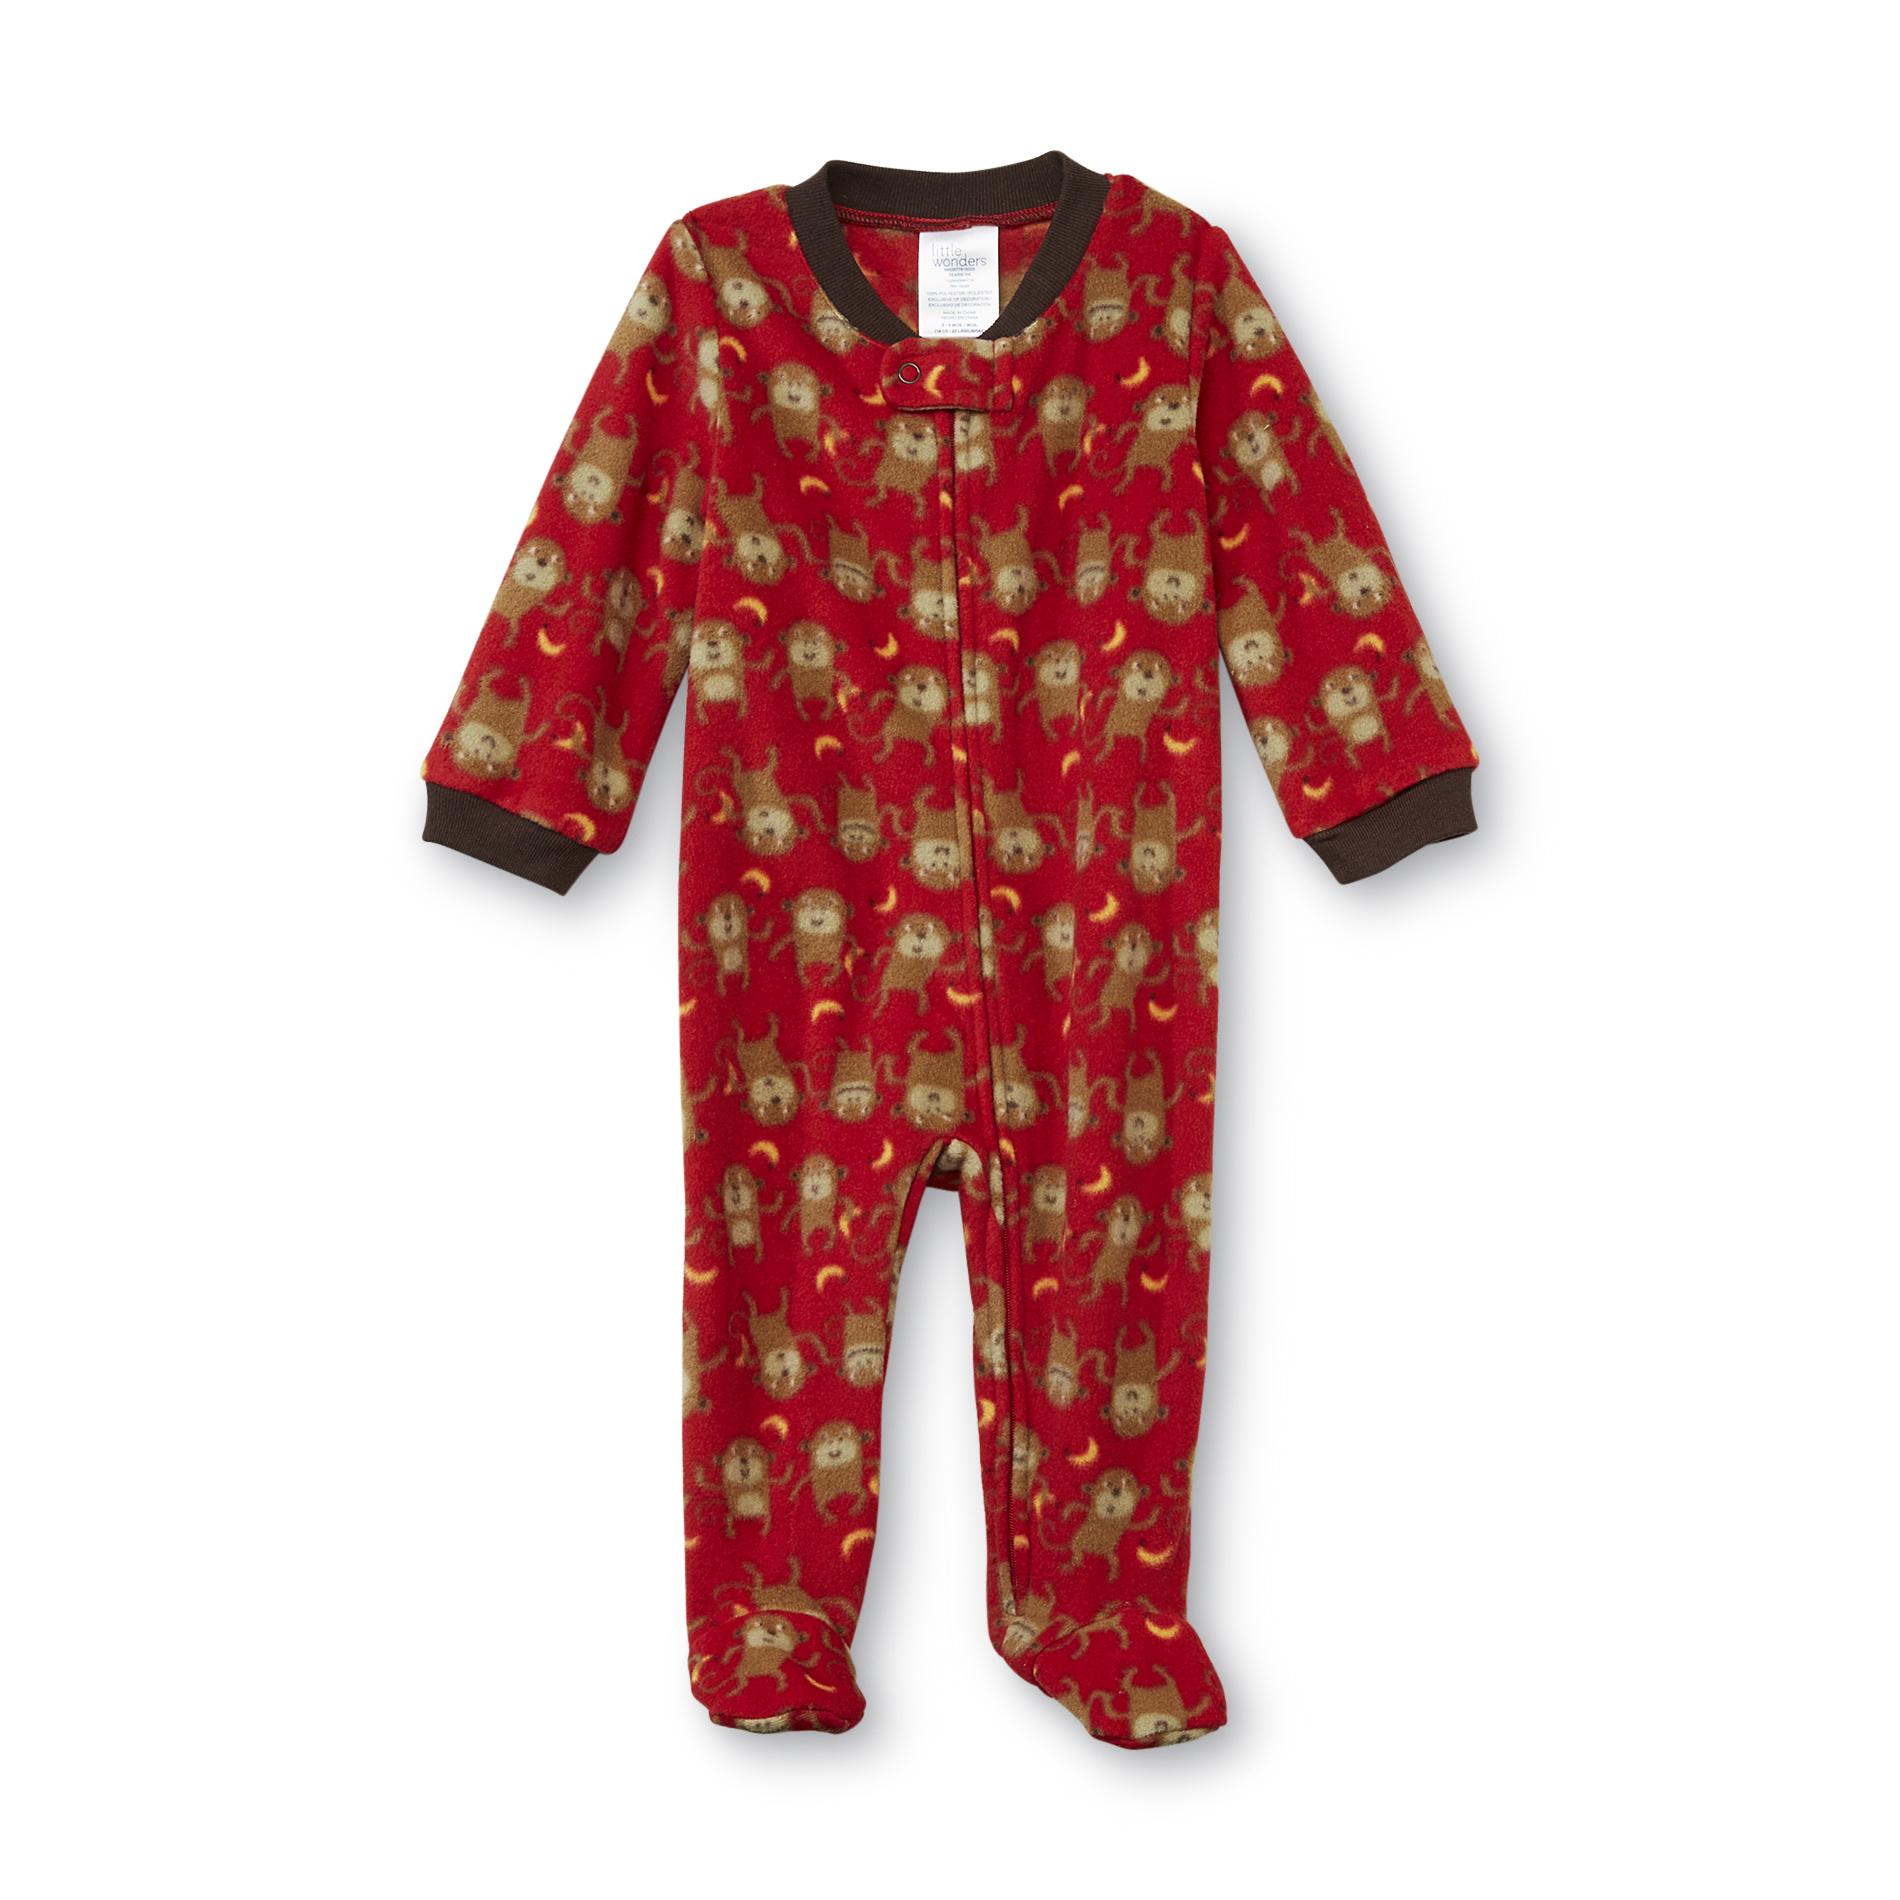 Little Wonders Infant Boy's Zipper Sleeper Pajamas - Monkeys